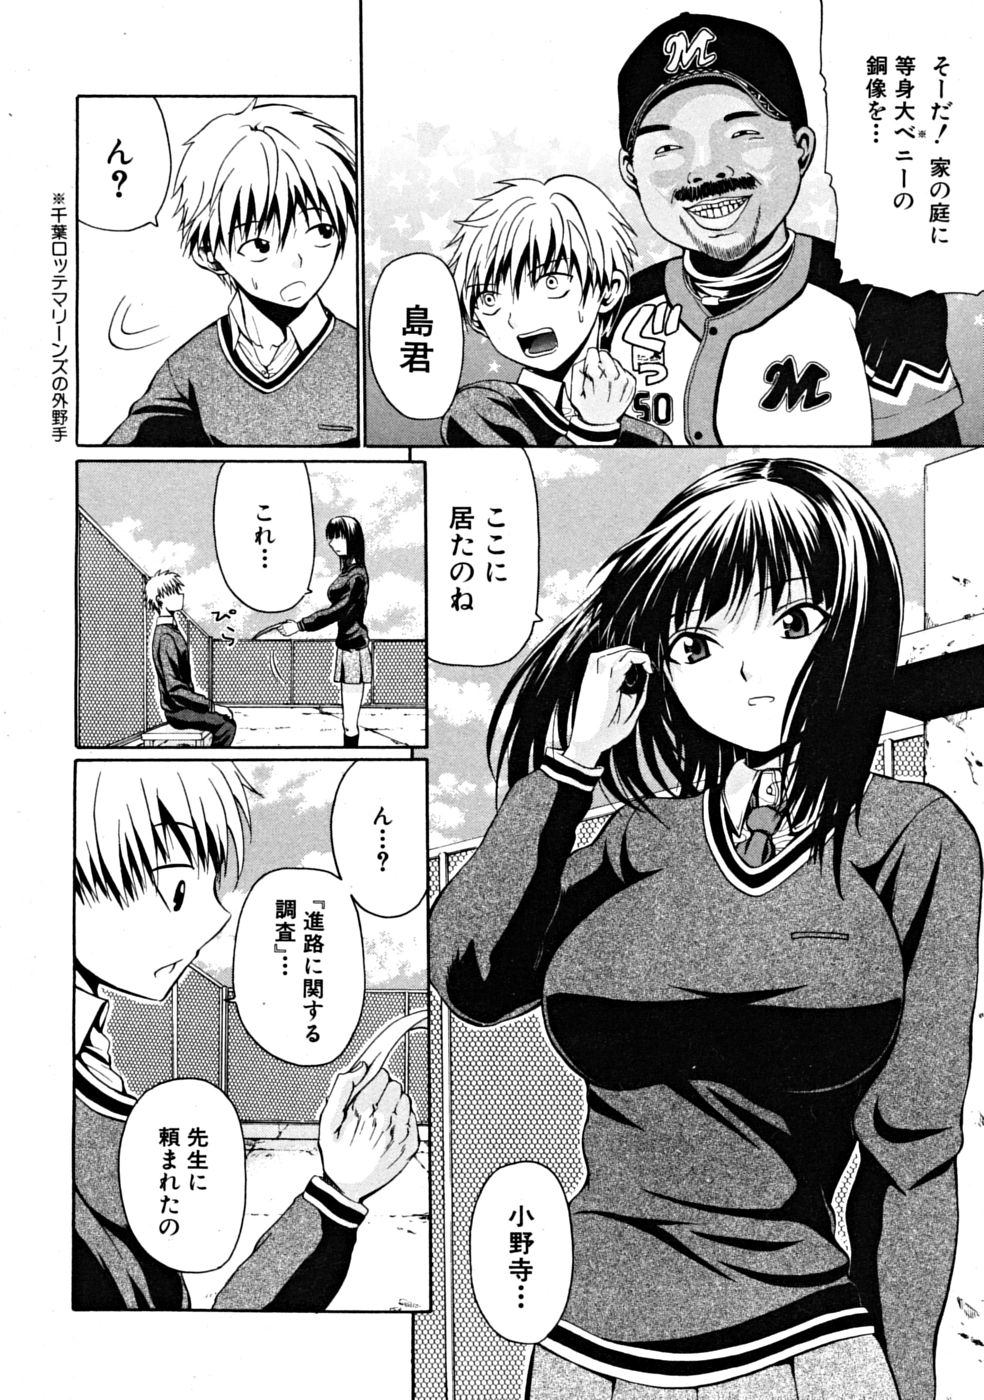 [Ozawada Kengo] Darakunodesutomasuta page 4 full